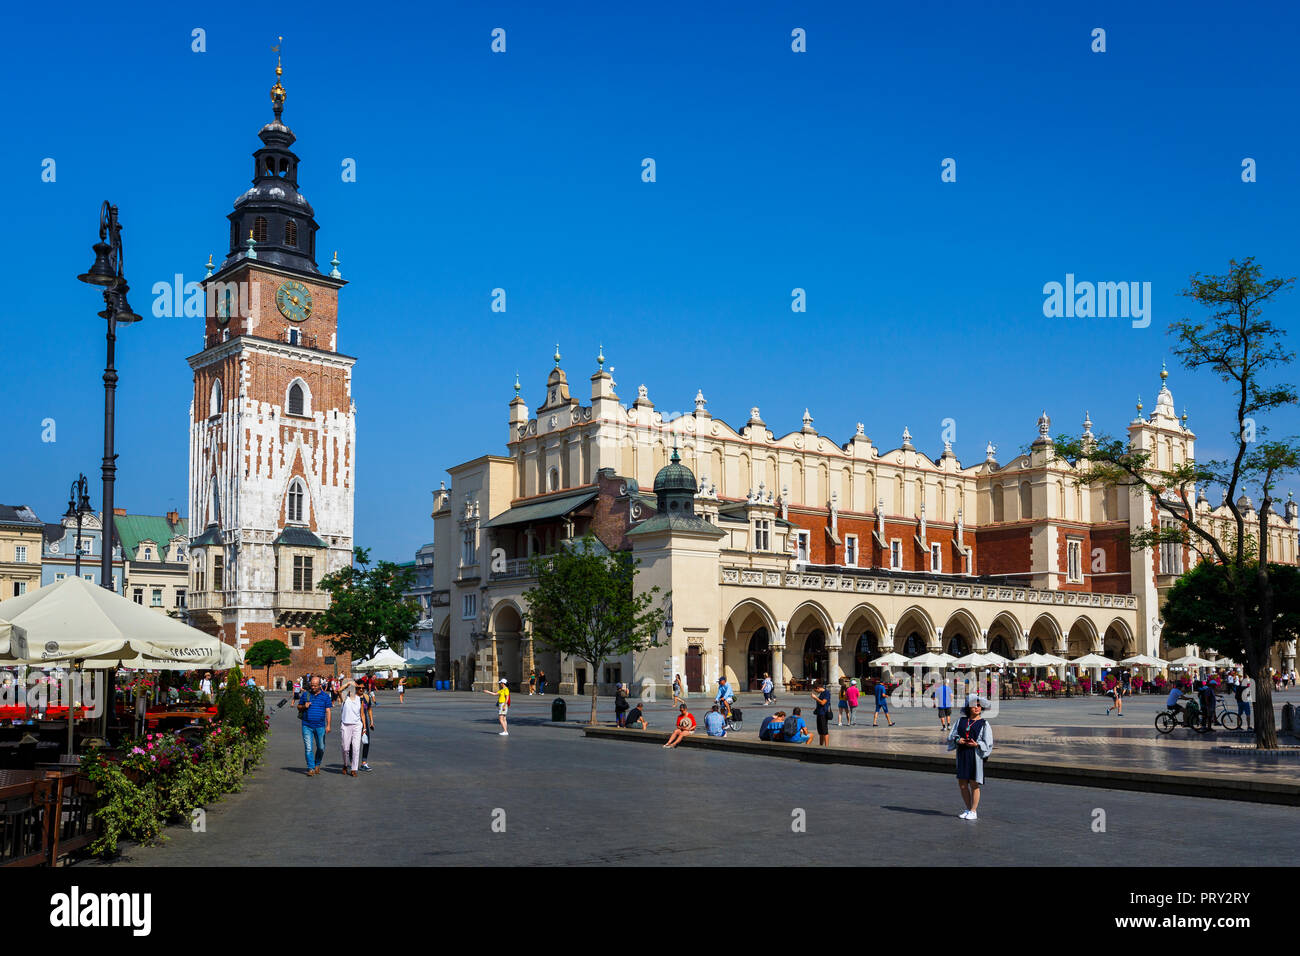 Krakau, Polen - 23. August 2018: Die Tuchhallen und Rathausturm auf dem Marktplatz von Krakau, Polen. Stockfoto